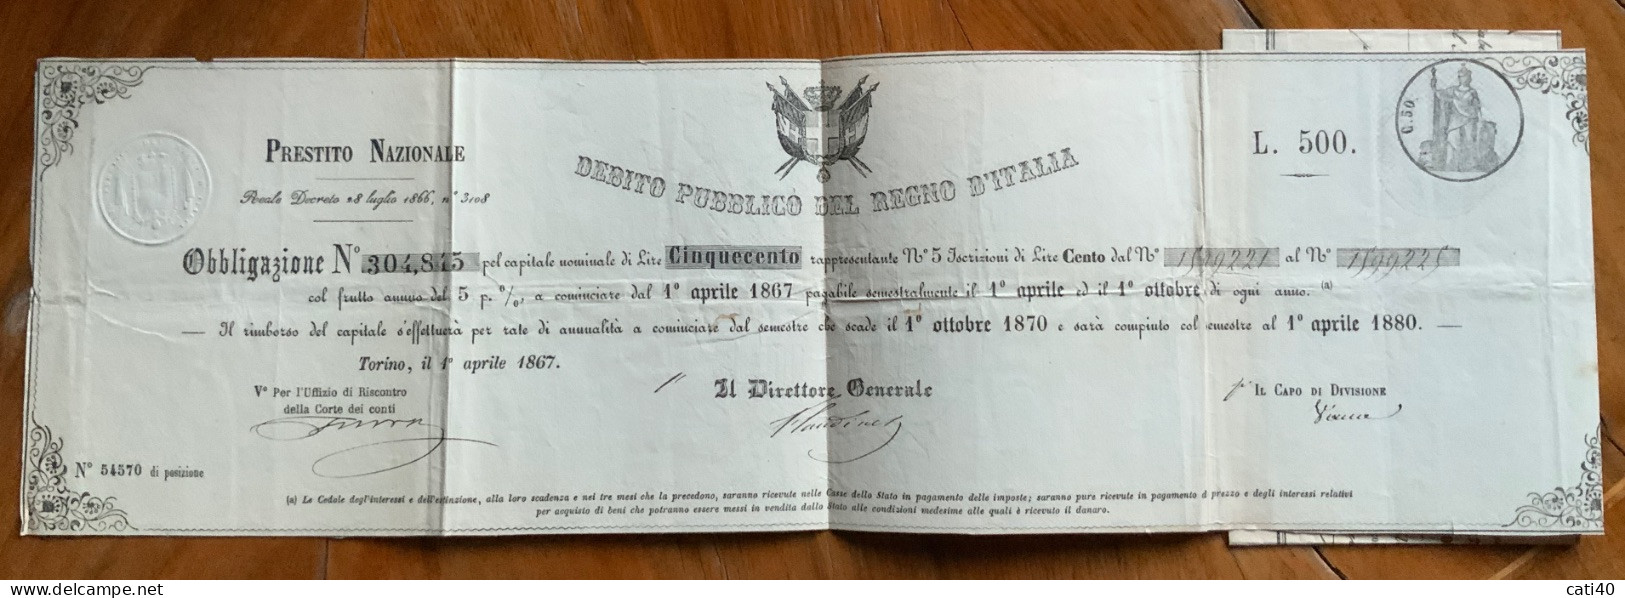 DEBITO PUBBLICO DEL REGNO D'ITALIA - PRESTITO NAZIONALE 1867  - OBBLIGAZIONE \ L. 500 - Transport